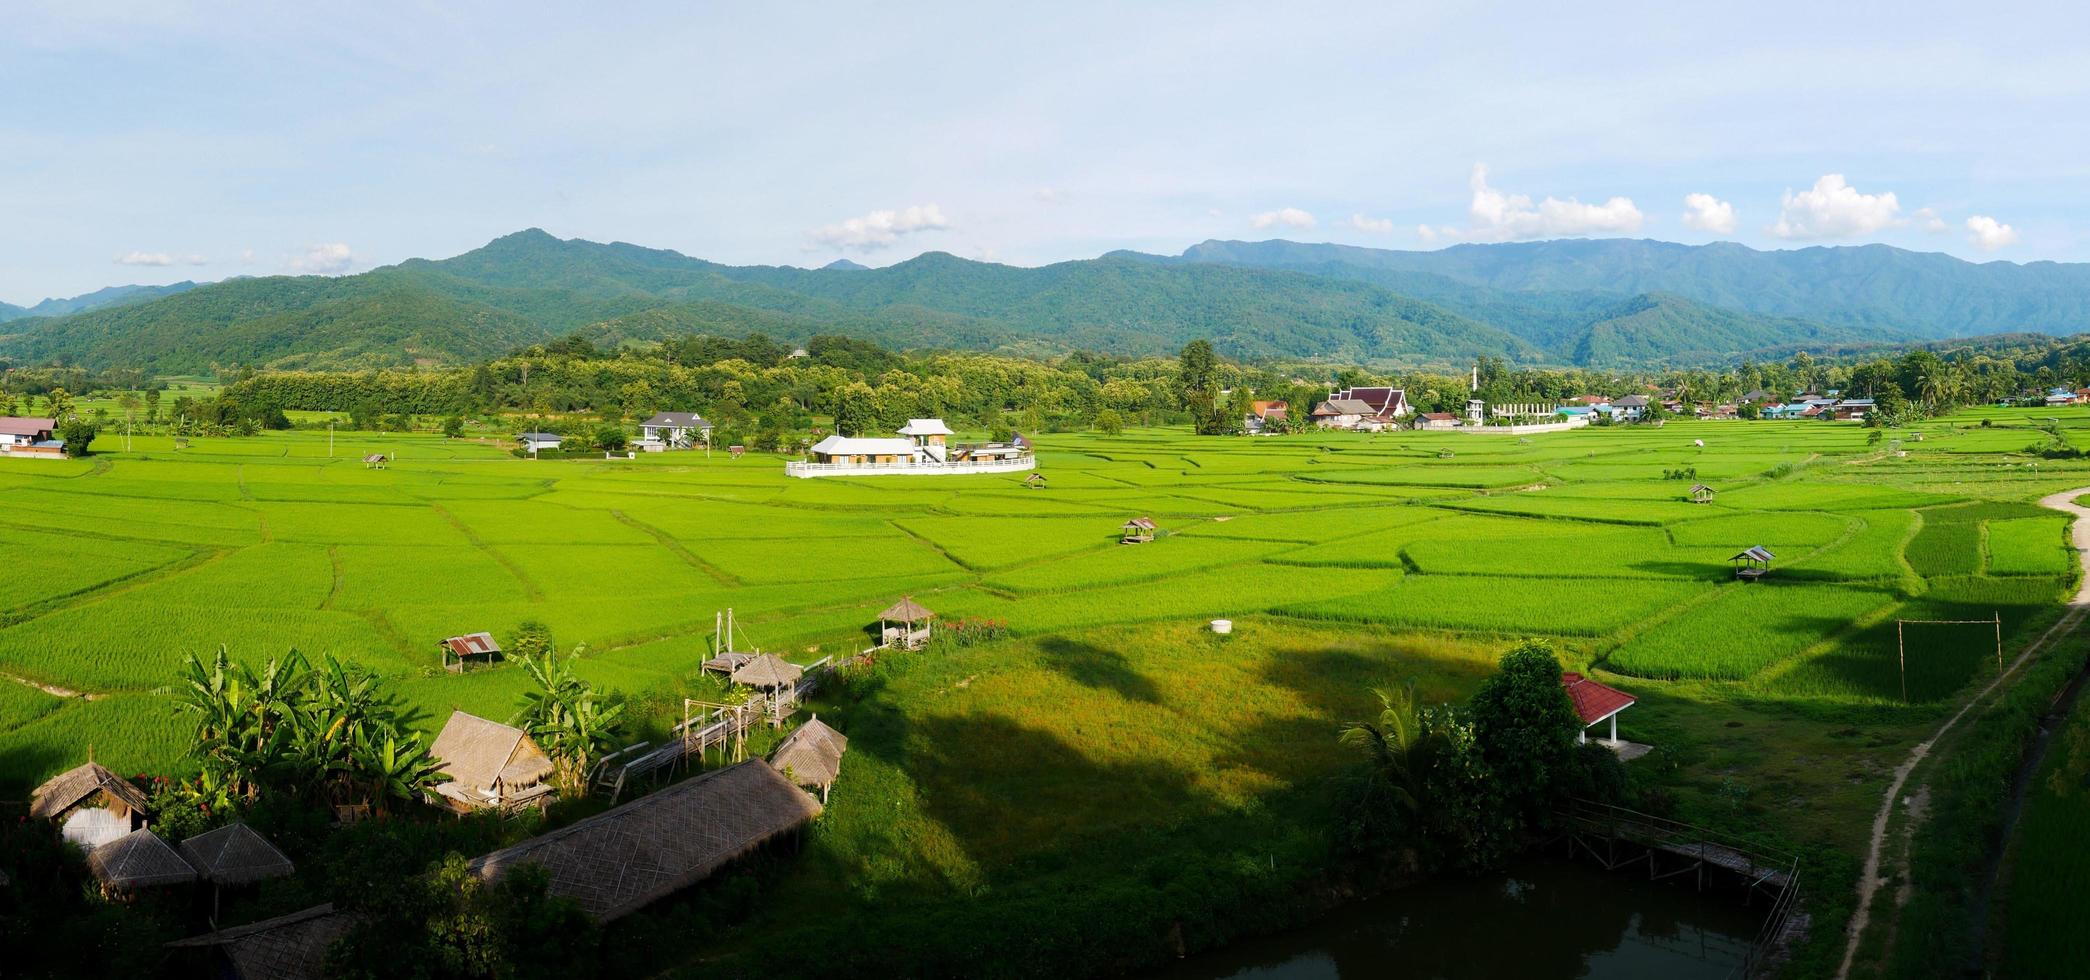 paesaggio del campo verde nella stagione delle piogge bellissimo villaggio nella valle foto